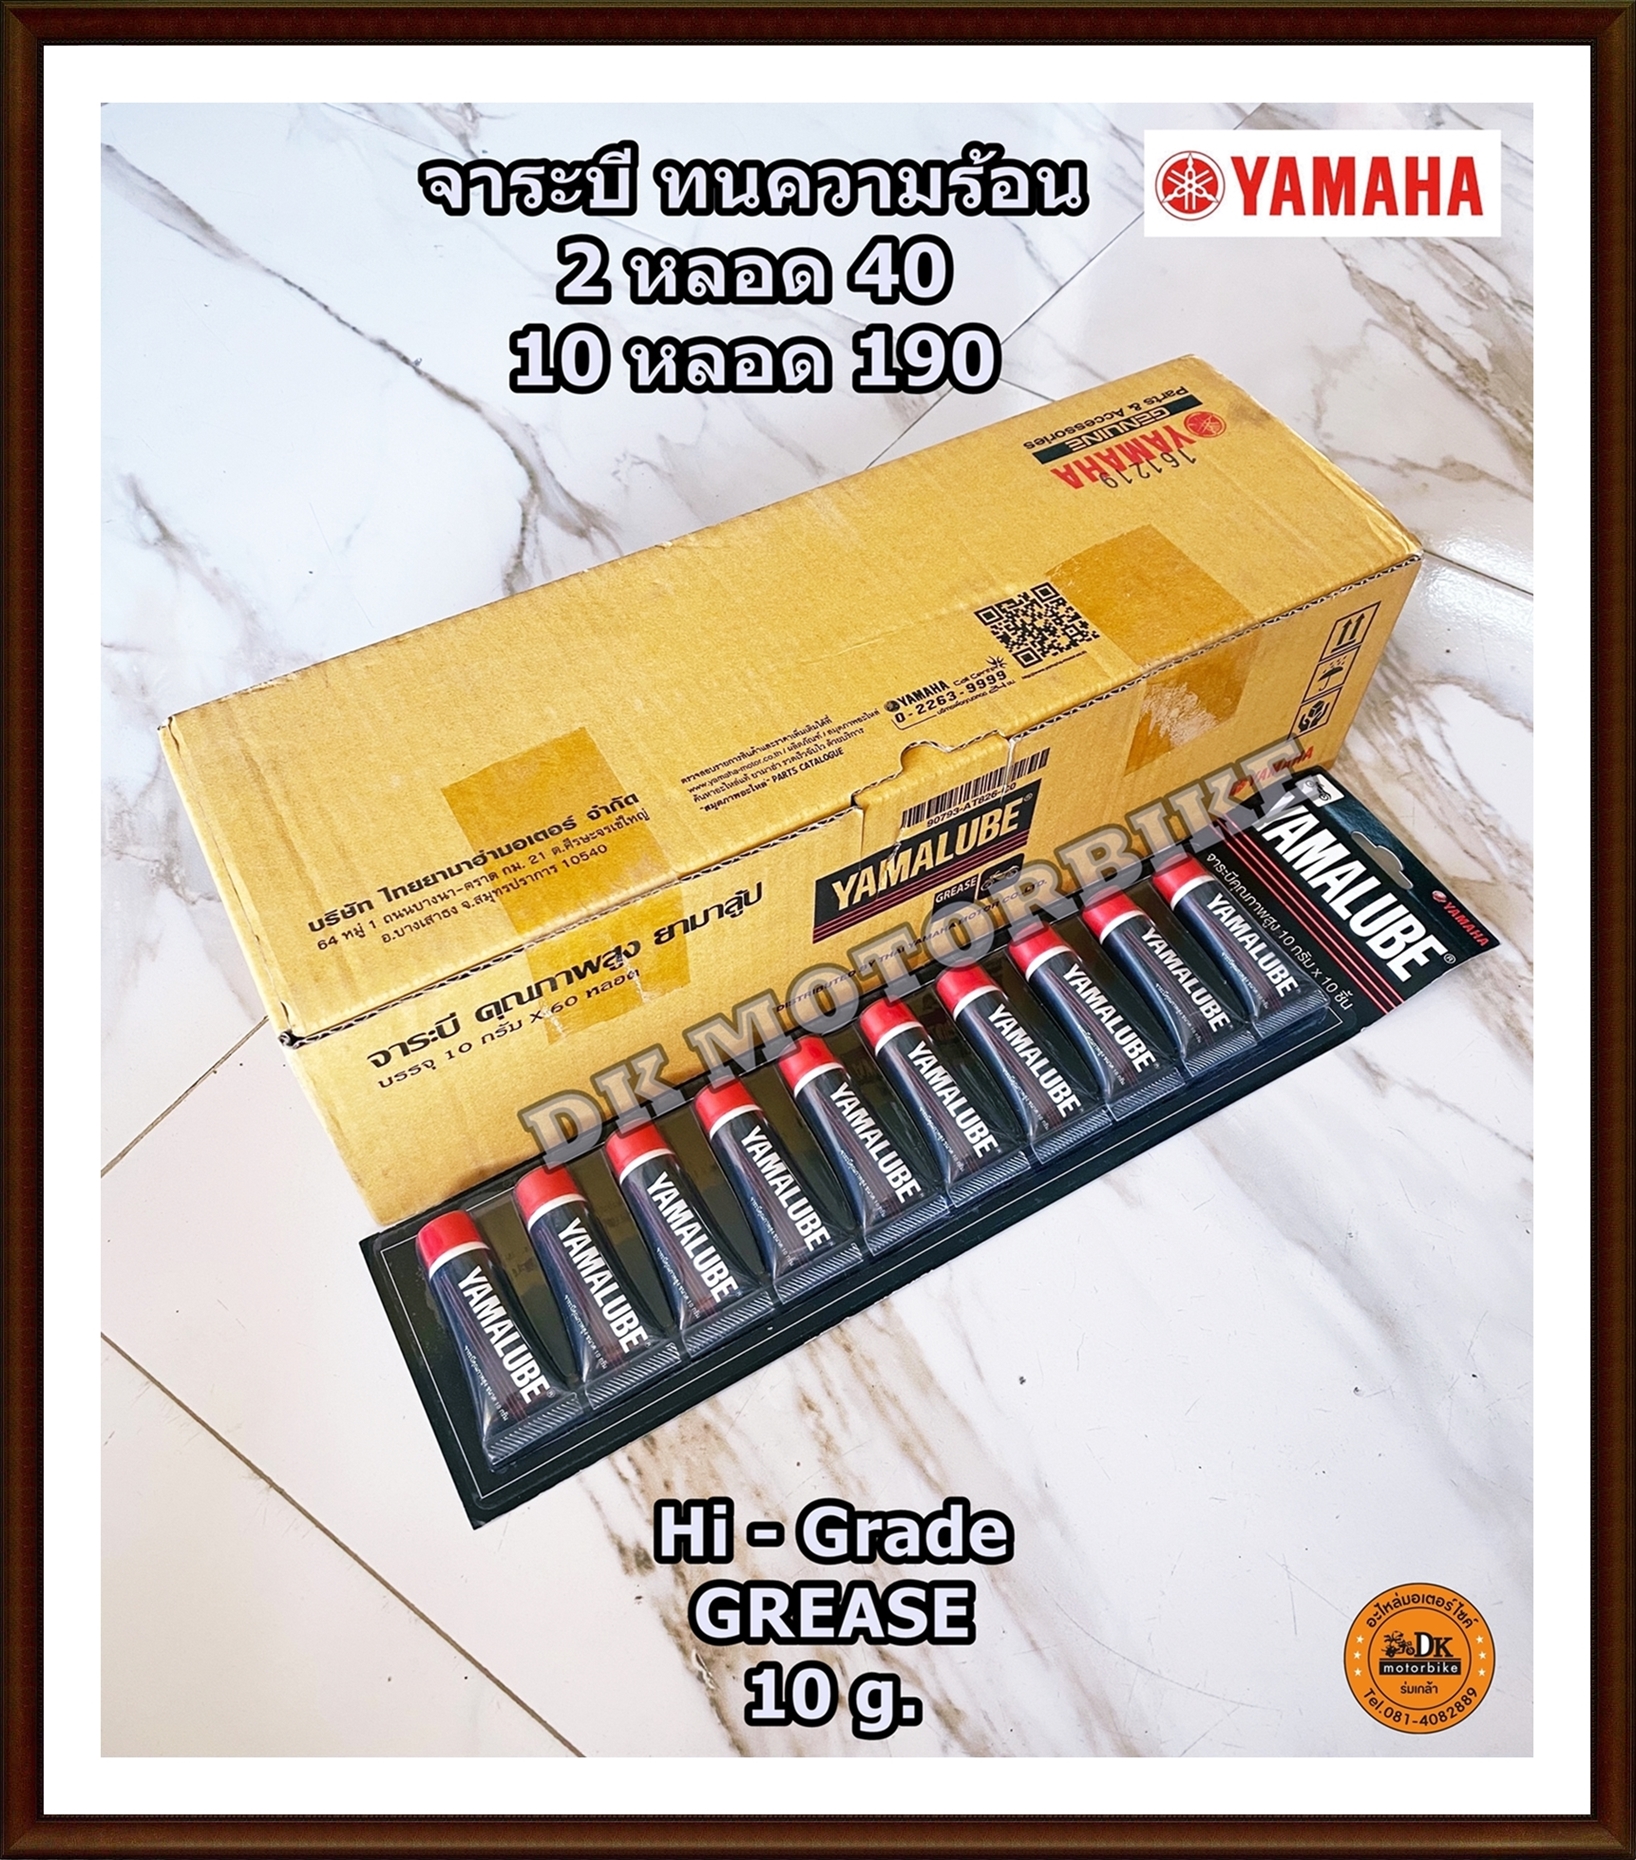 จาระบี ทนความร้อน / จาระบีคุณภาพสูง ขนาด 10 กรัม / ของแท้เบิกศูนย์ YAMAHA (ขาย 2 หลอด 40 บาท) Made in JAPAN / *กดซื้อโดยกดเลือกที่ตัวเลือกก่อน*